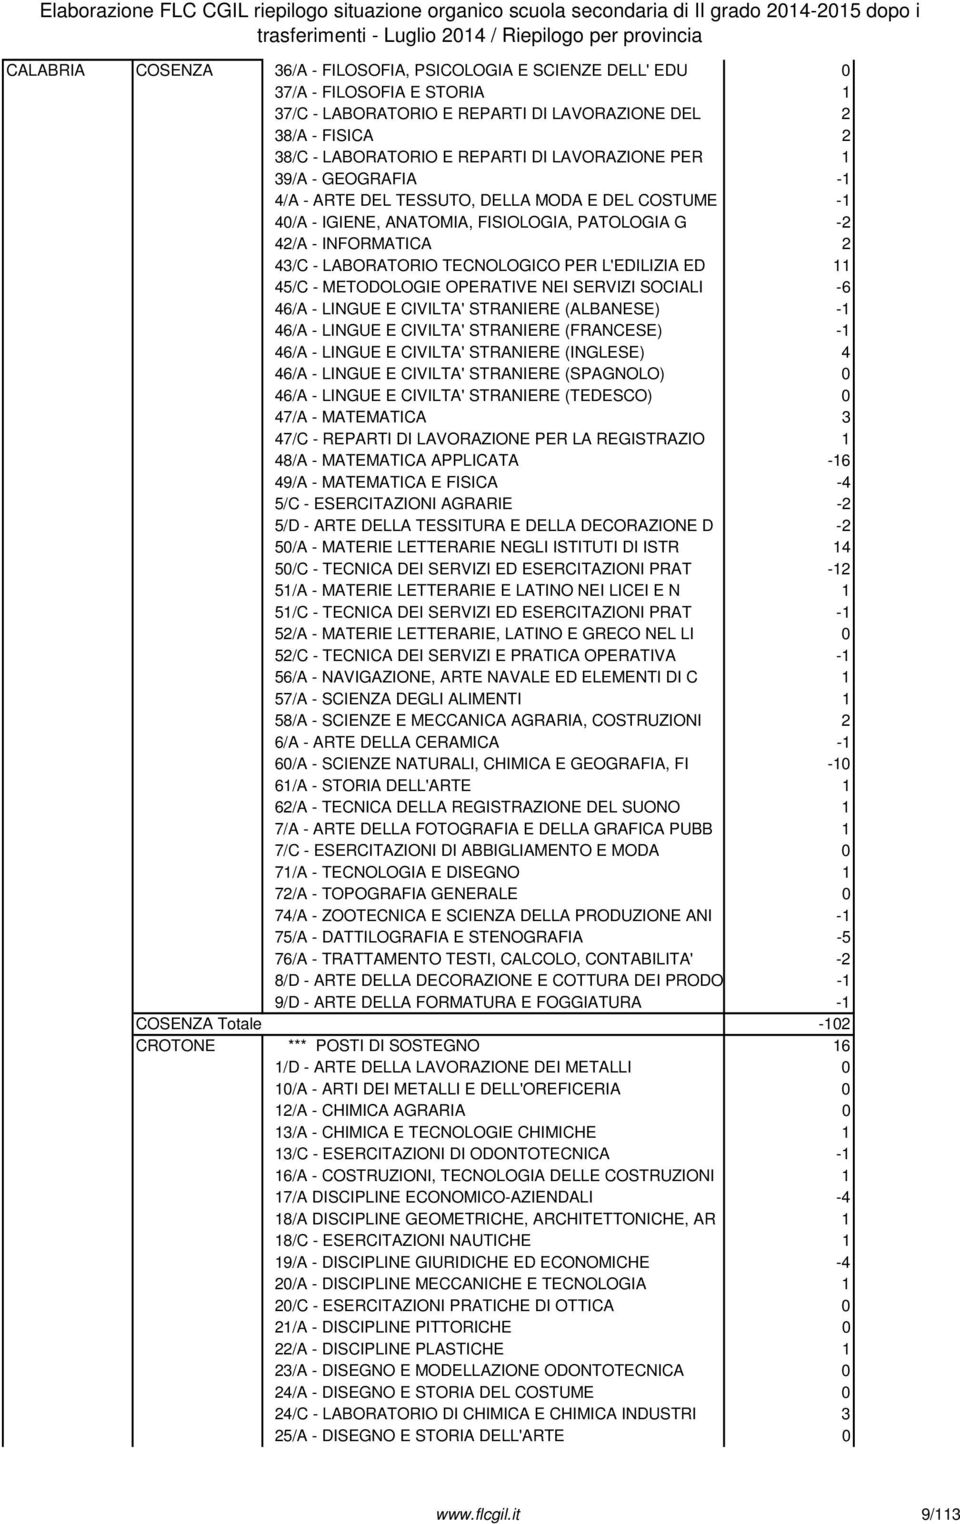 INFORMATICA 2 43/C - LABORATORIO TECNOLOGICO PER L'EDILIZIA ED 11 45/C - METODOLOGIE OPERATIVE NEI SERVIZI SOCIALI -6 46/A - LINGUE E CIVILTA' STRANIERE (ALBANESE) -1 46/A - LINGUE E CIVILTA'